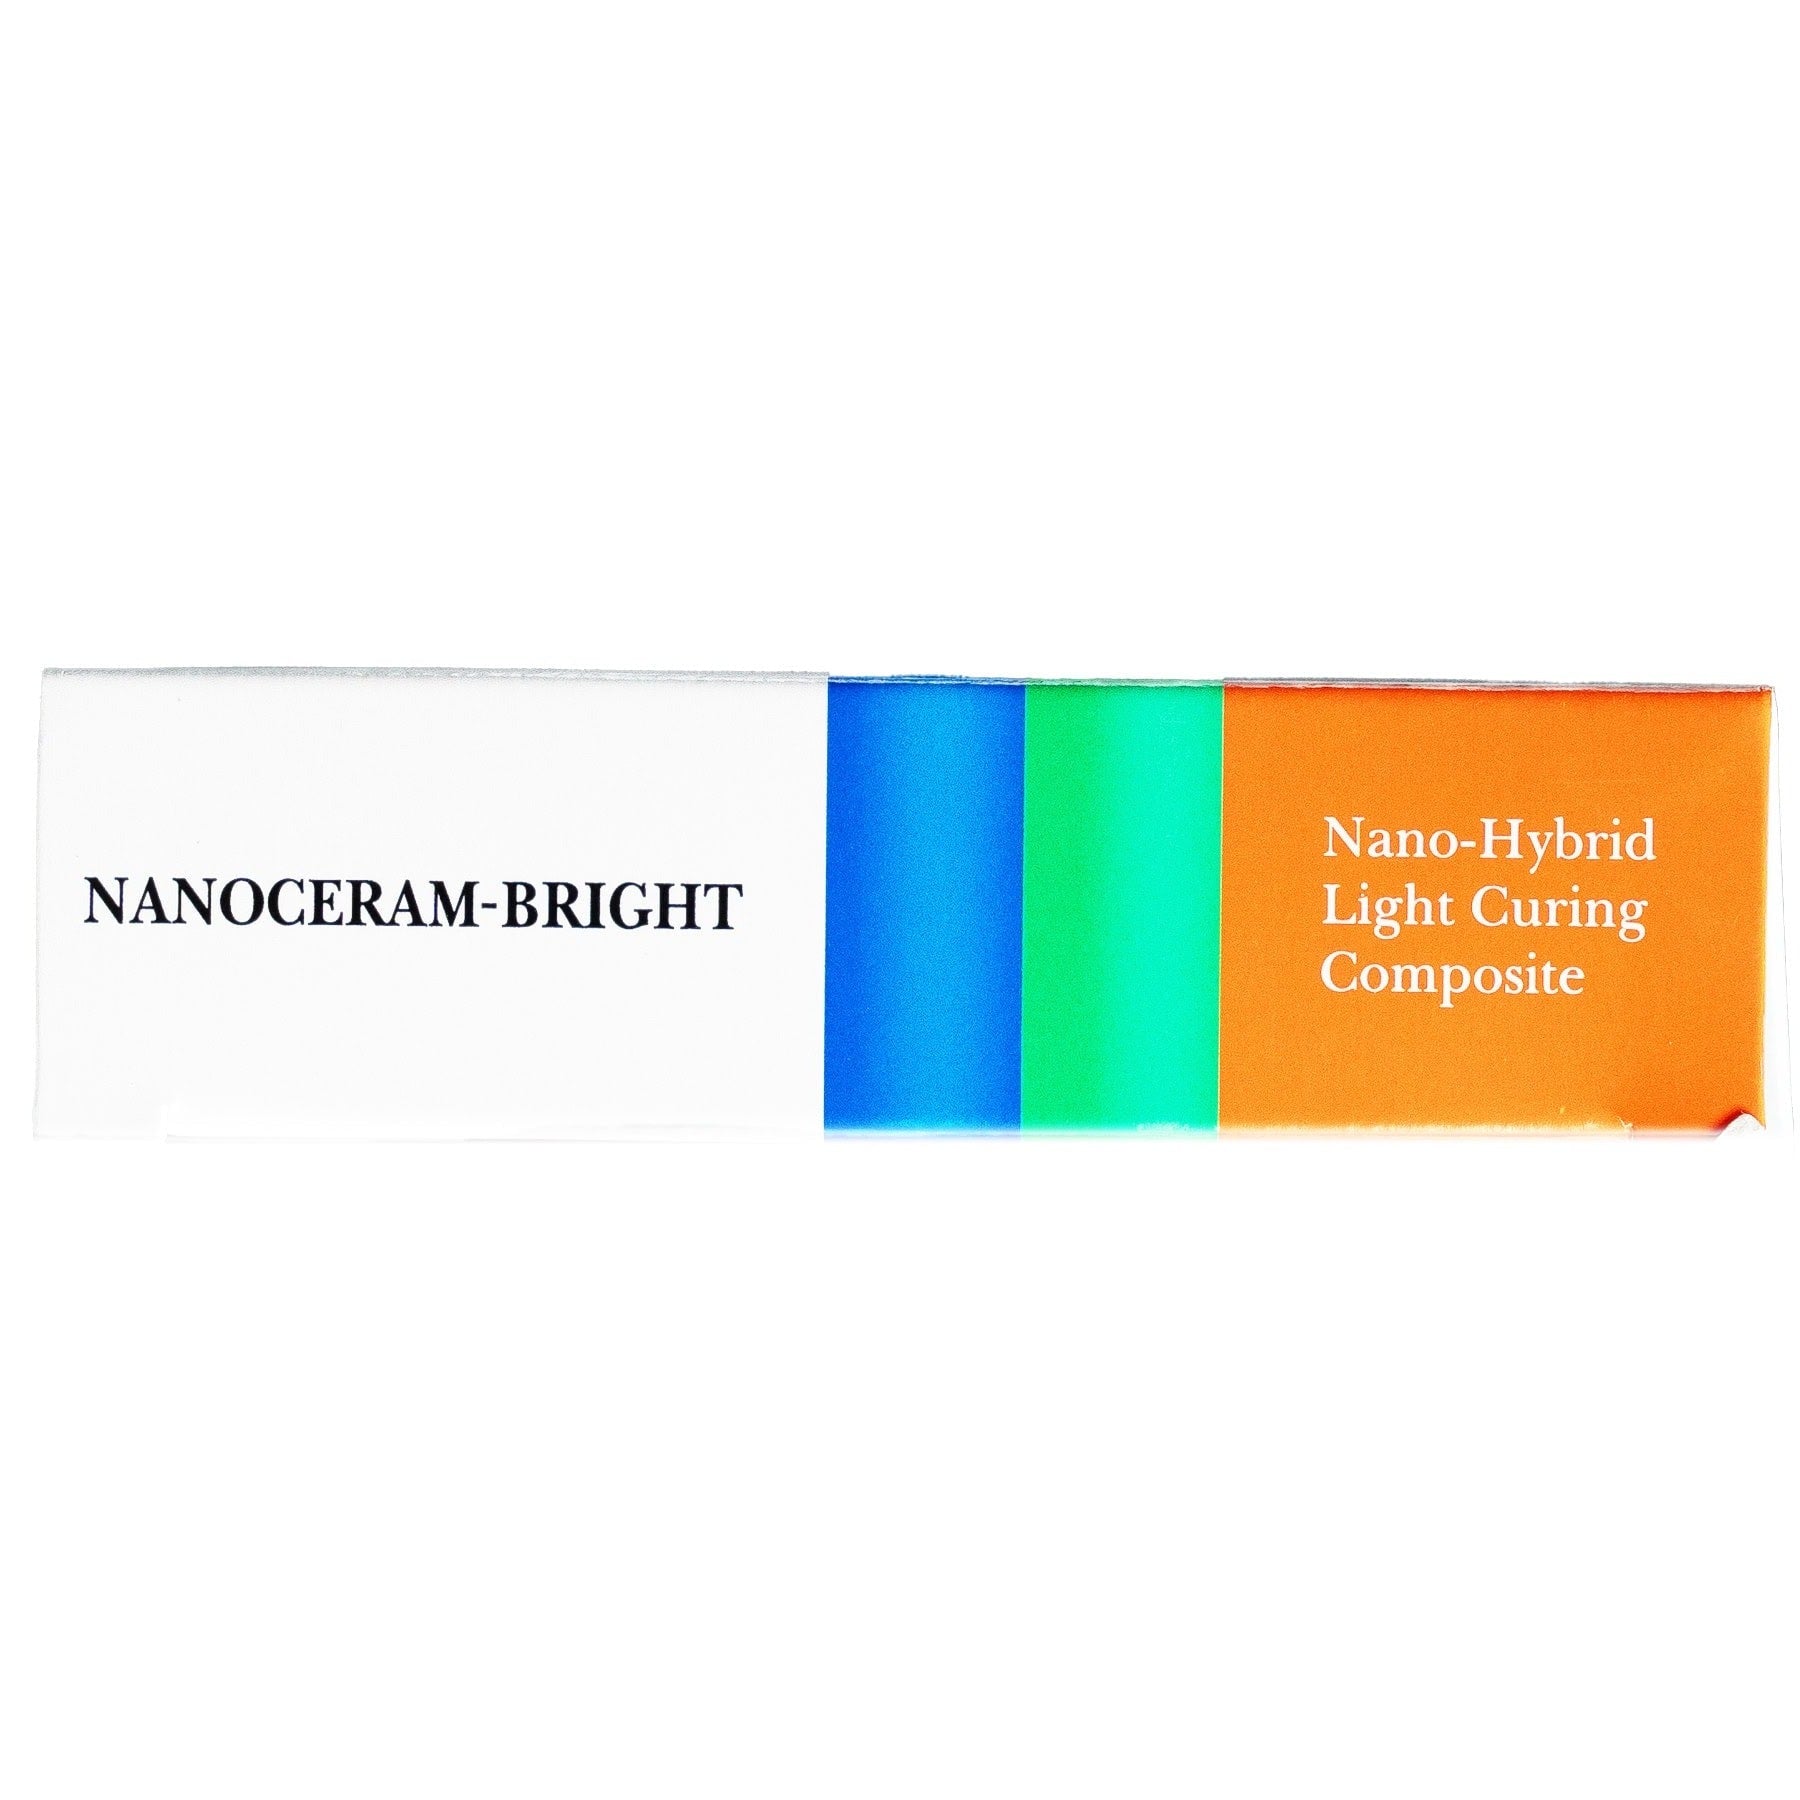 NANOCERAM-BRIGHT Composite A4, 0.25g capsules x 20/pk.